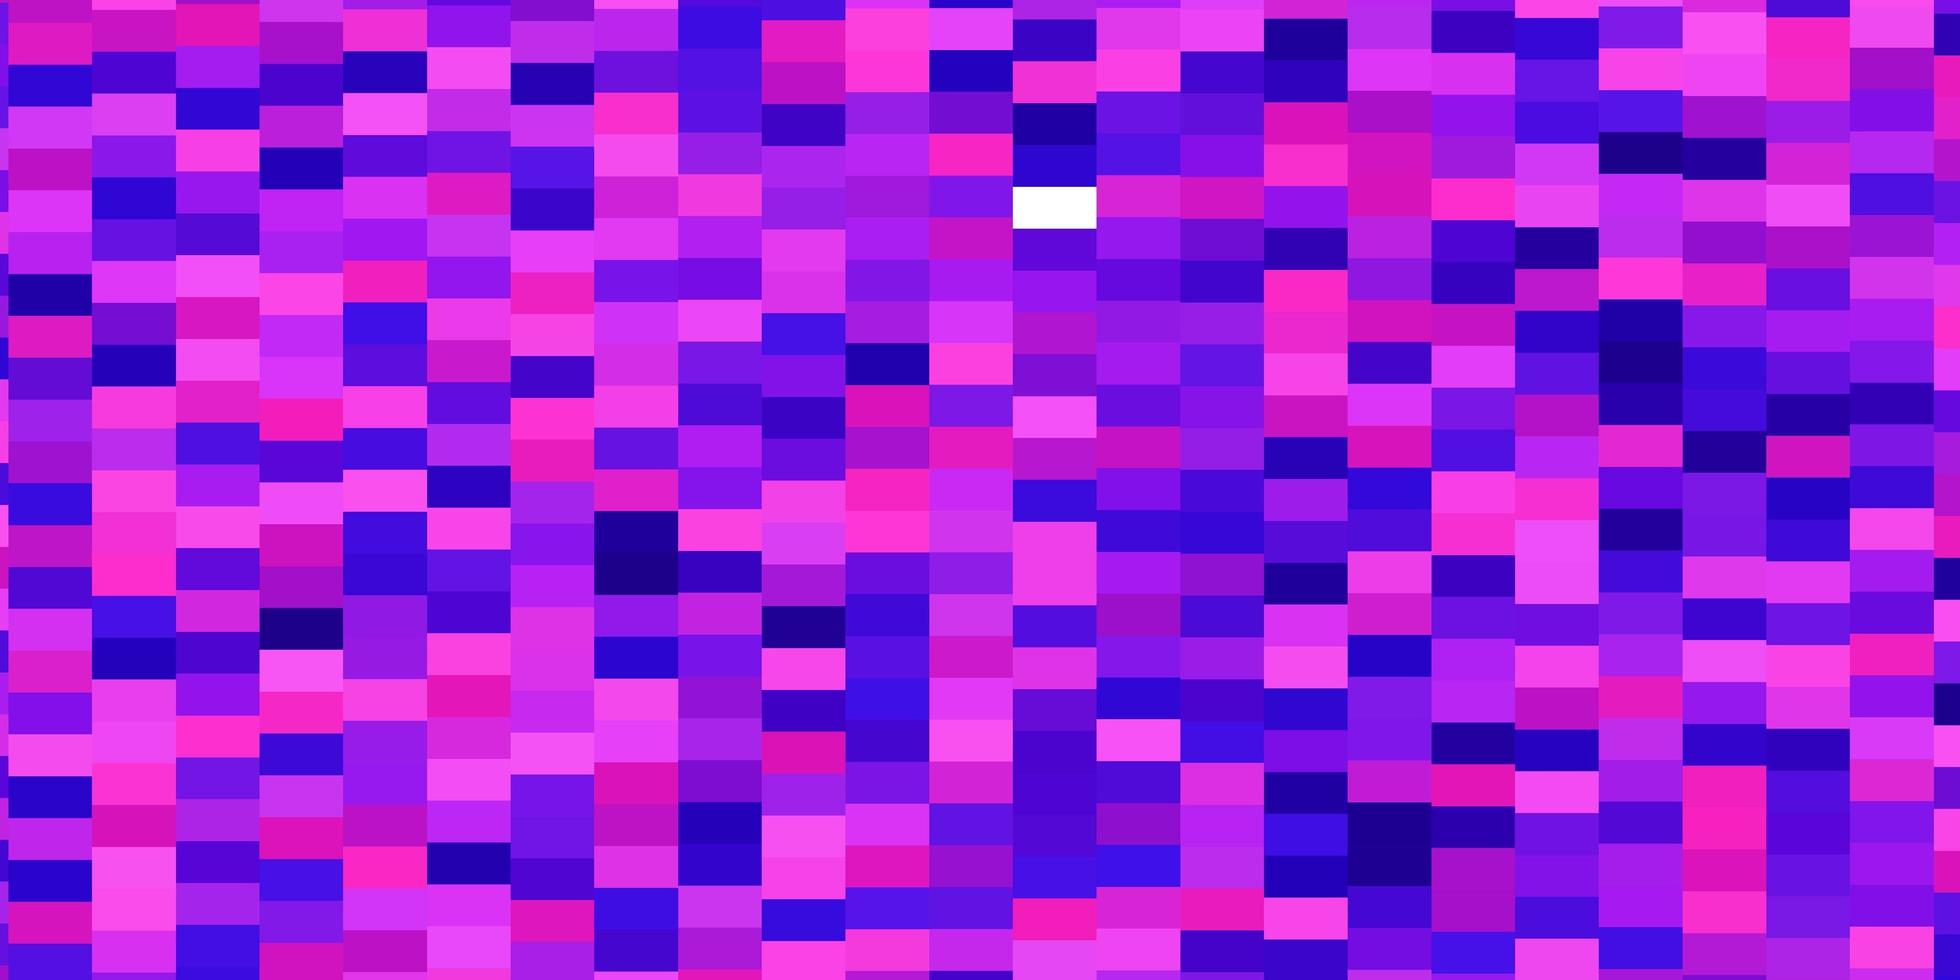 Fondo de vector violeta, rosa claro con rectángulos.